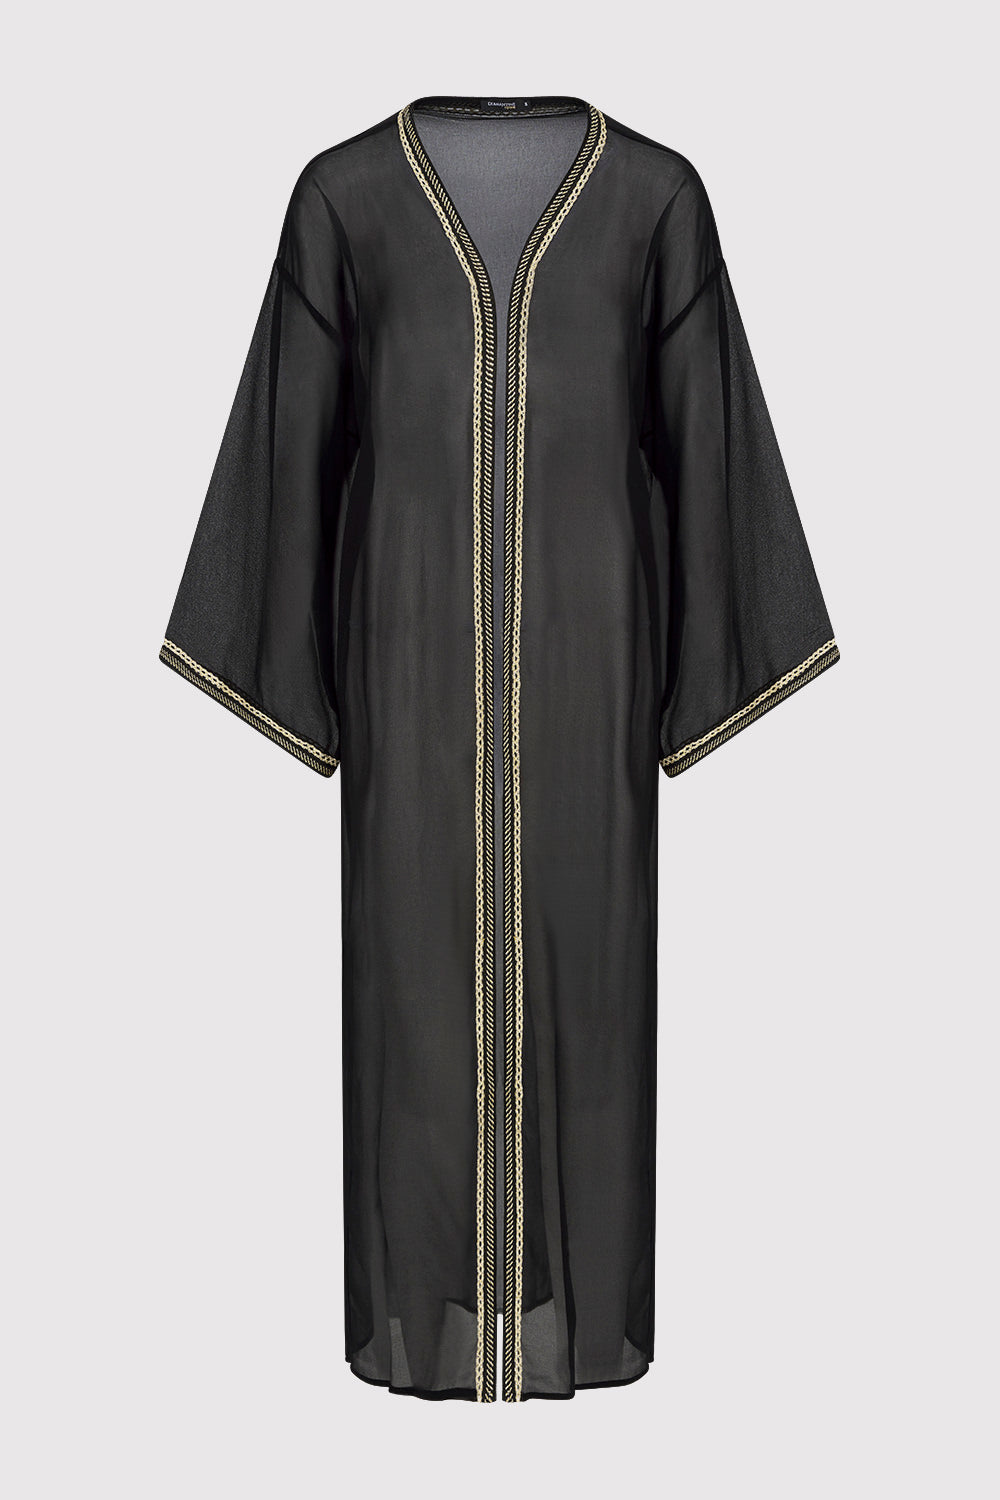 Amazon Women's Chiffon Sheer Long Sleeve Kimono Cape in Black